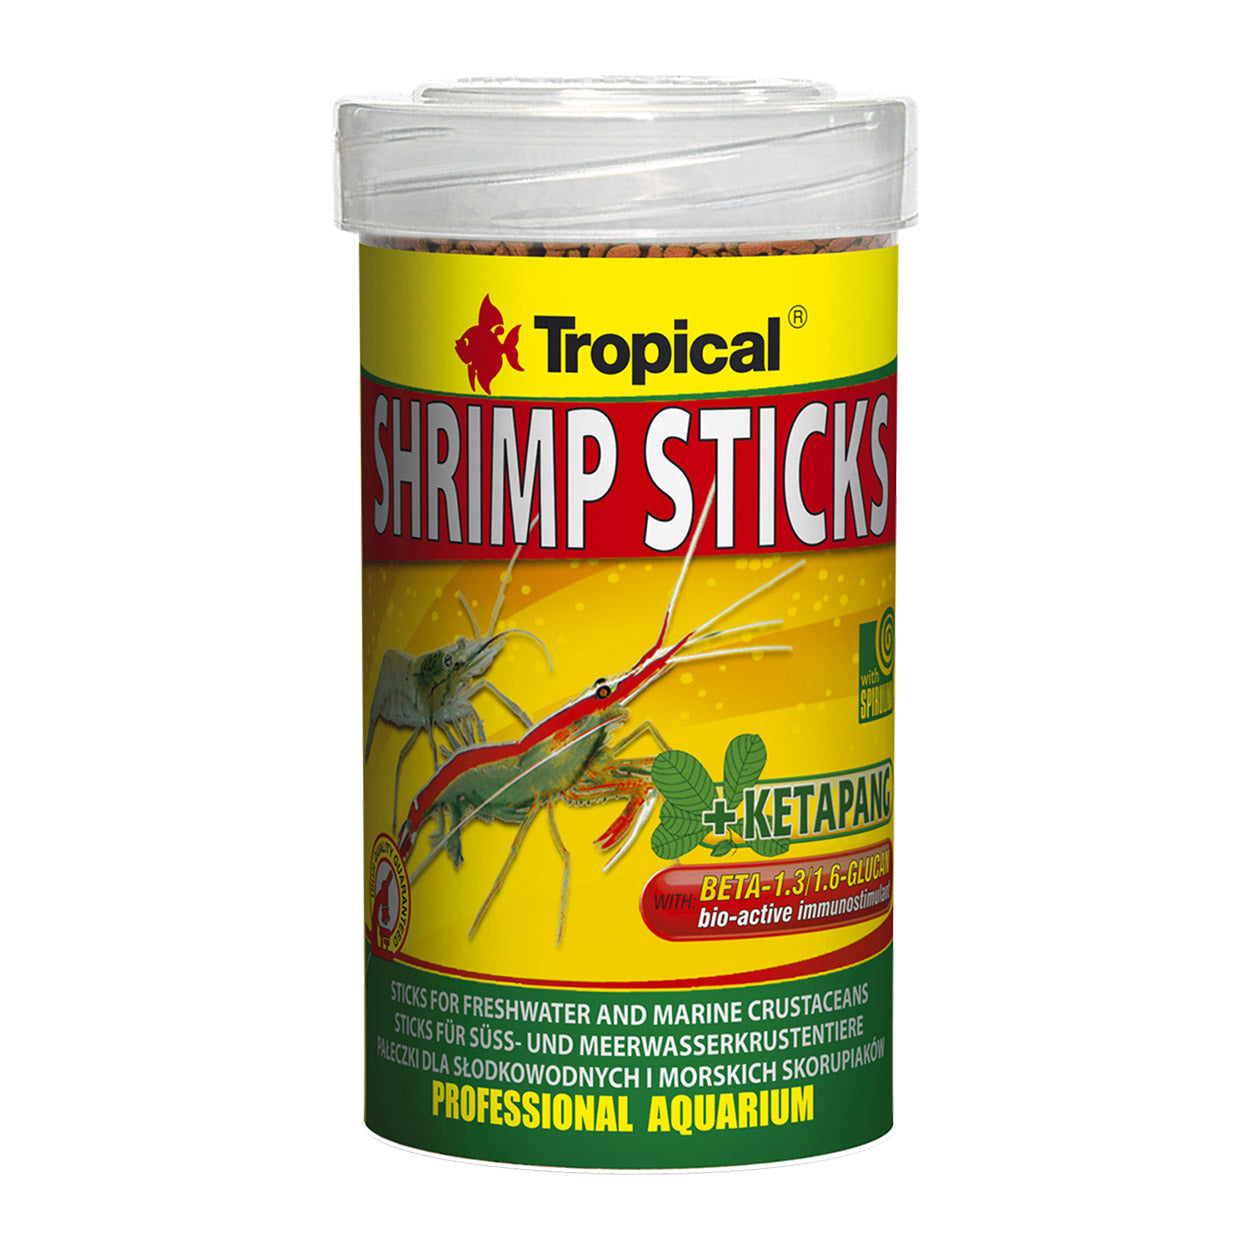 Tropical Shrimp Sticks - 55 g